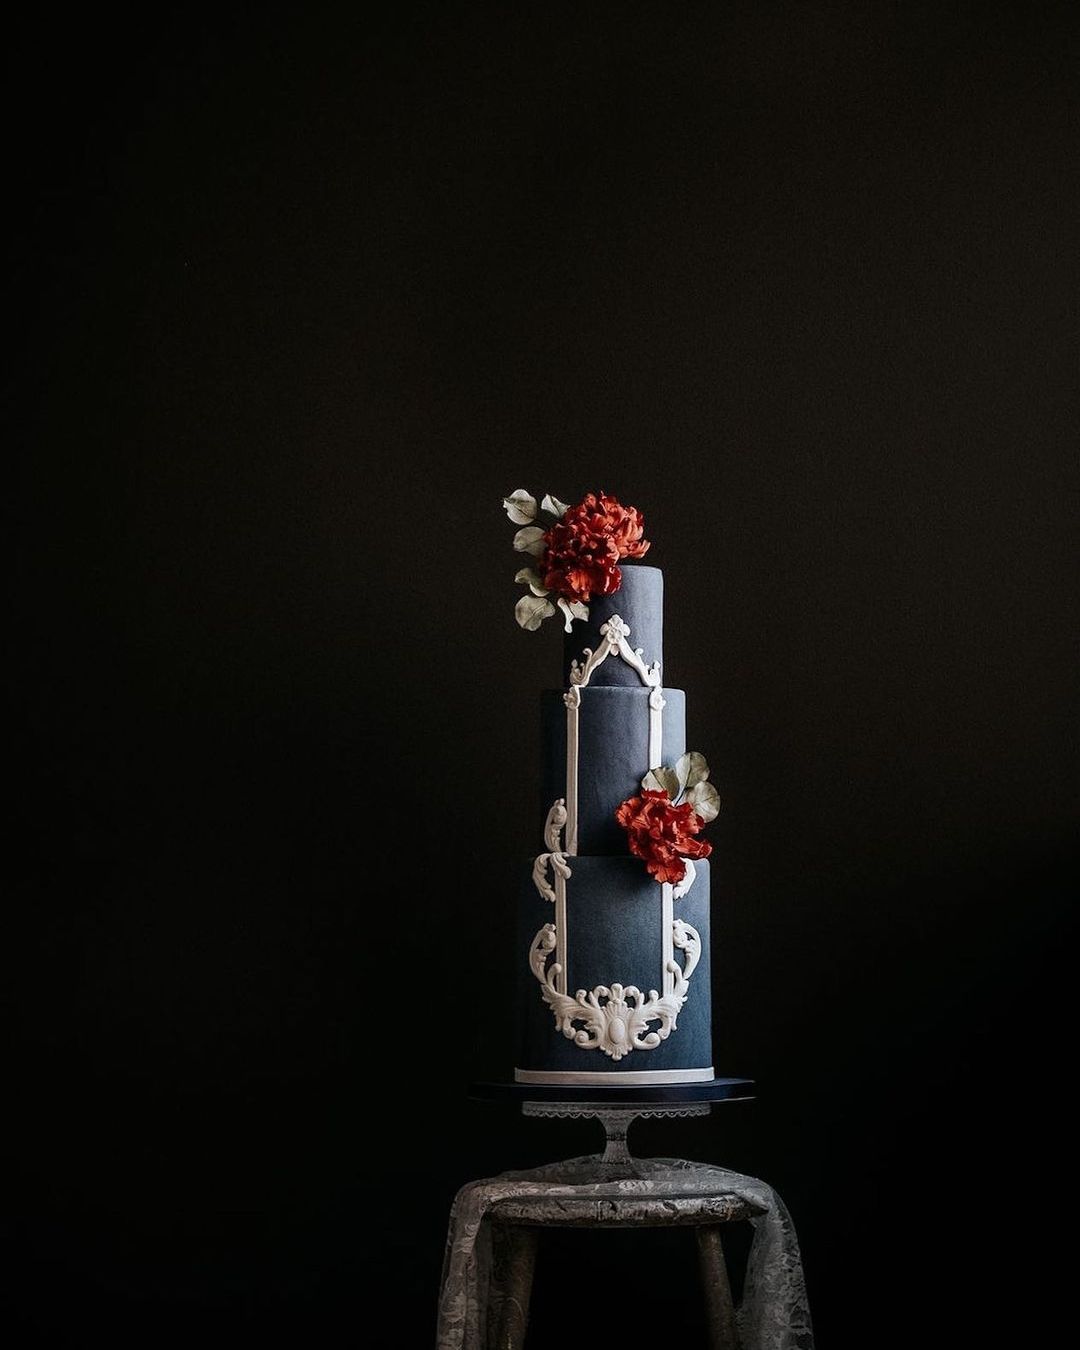 black wedding cake glamorous